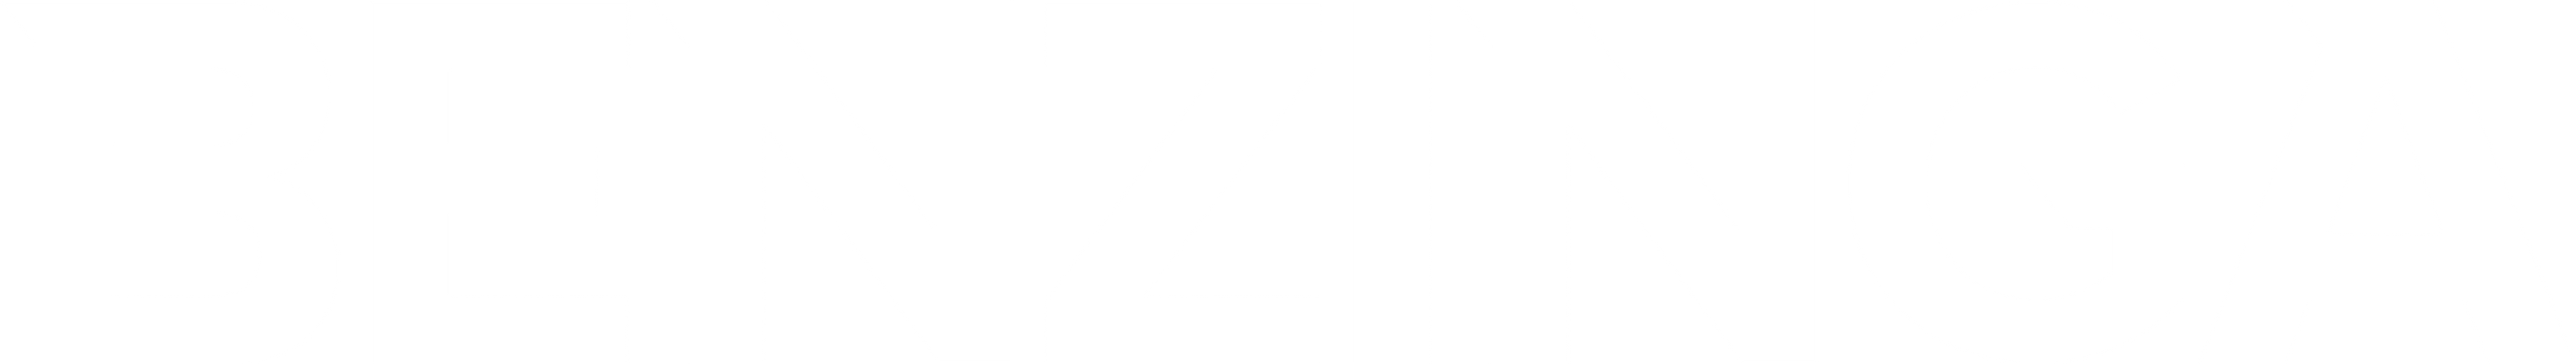 Benzinga Logo 02 - Only at www.BallersClubKickz.com - white Benzinga logo with transparent background